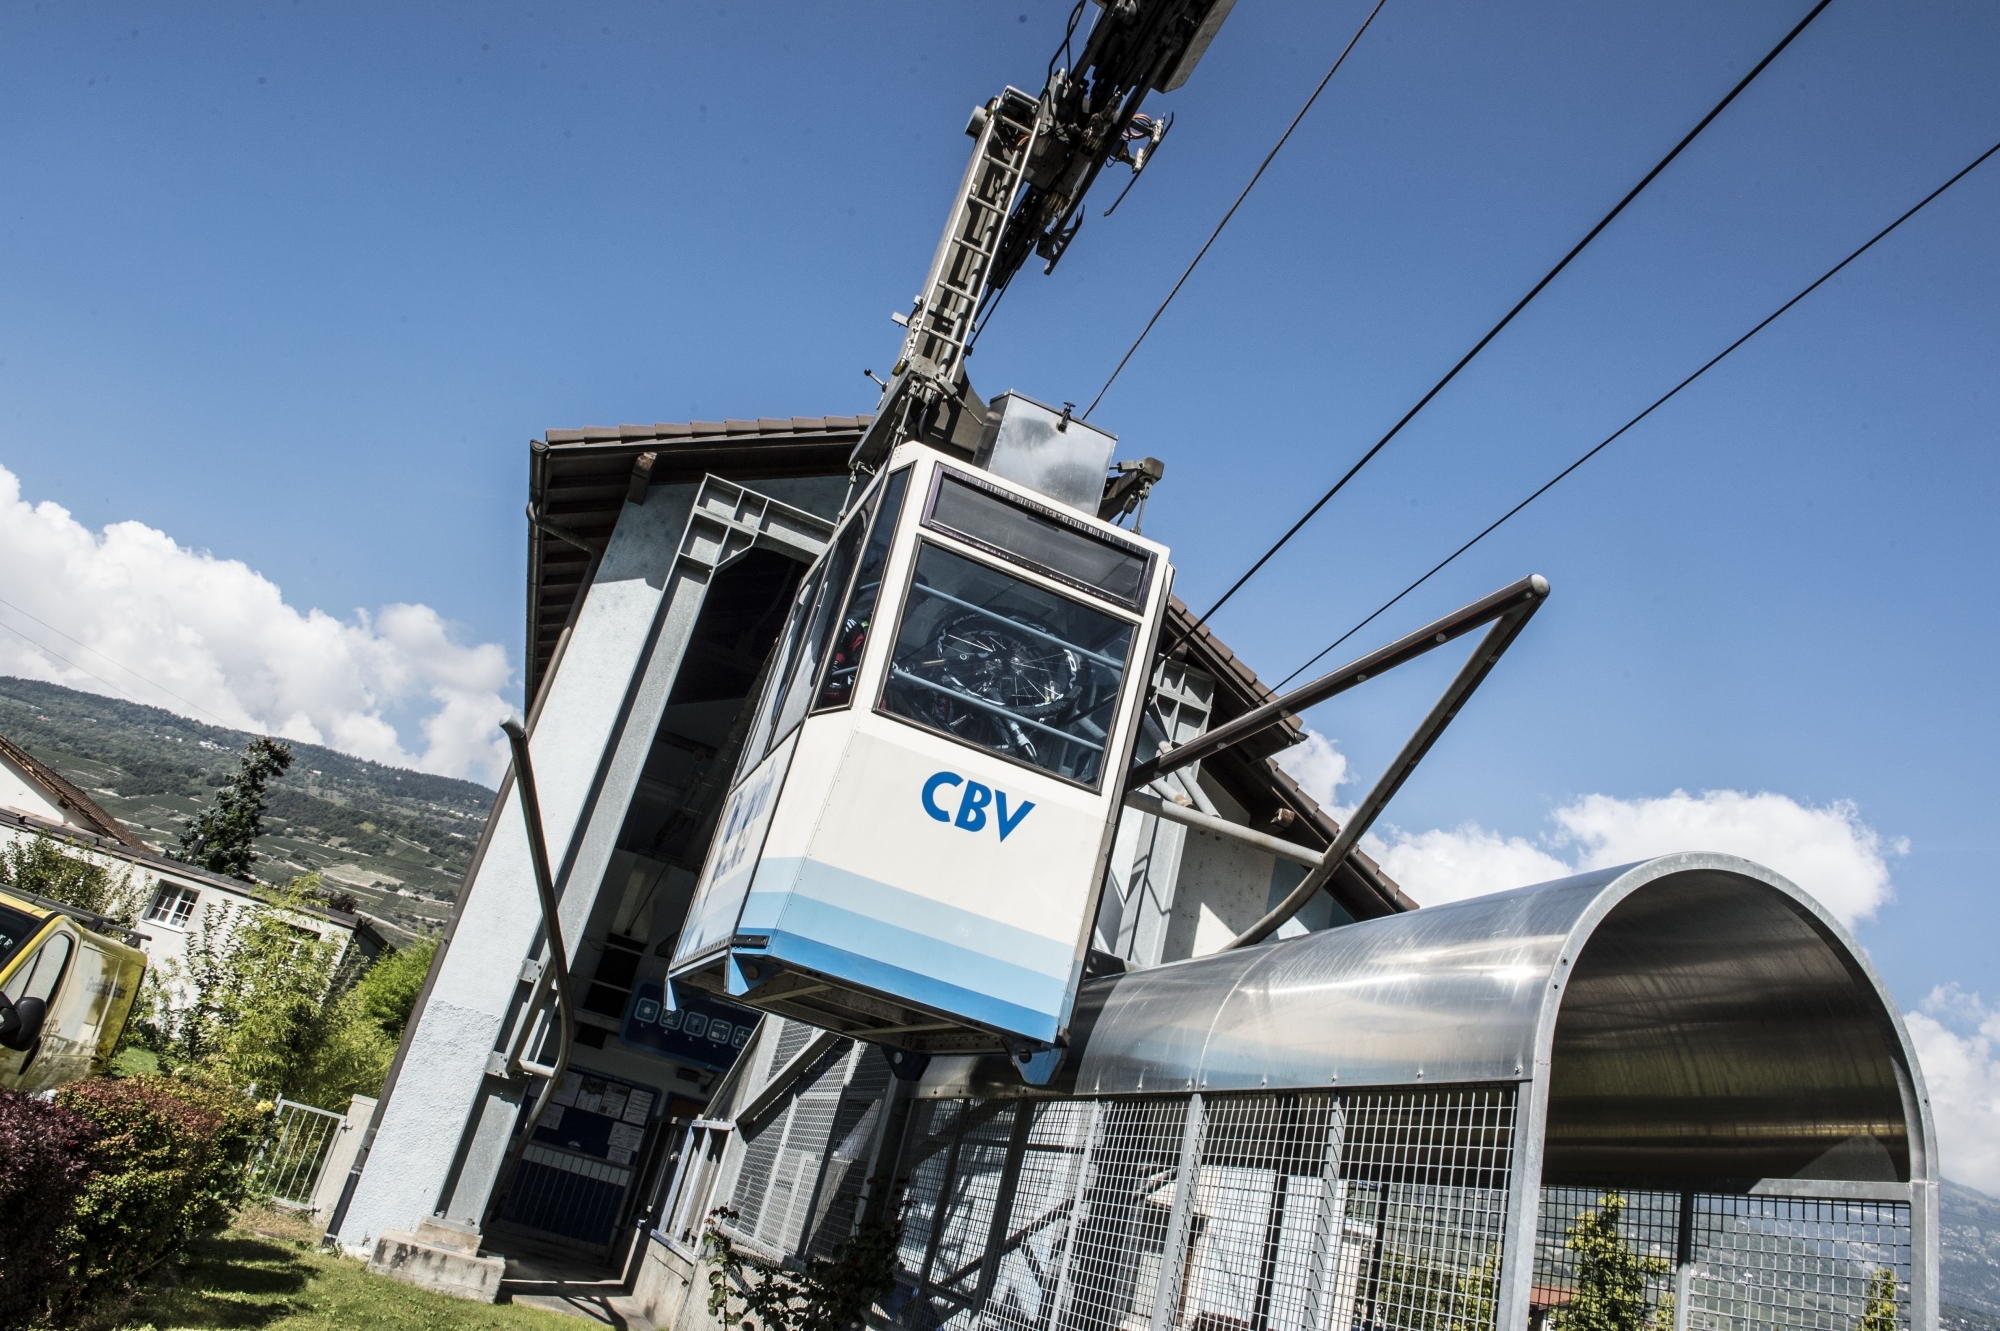 Le Conseil d'administration de la société Téléphérique Chalais-Vercorin SA se renouvelle.